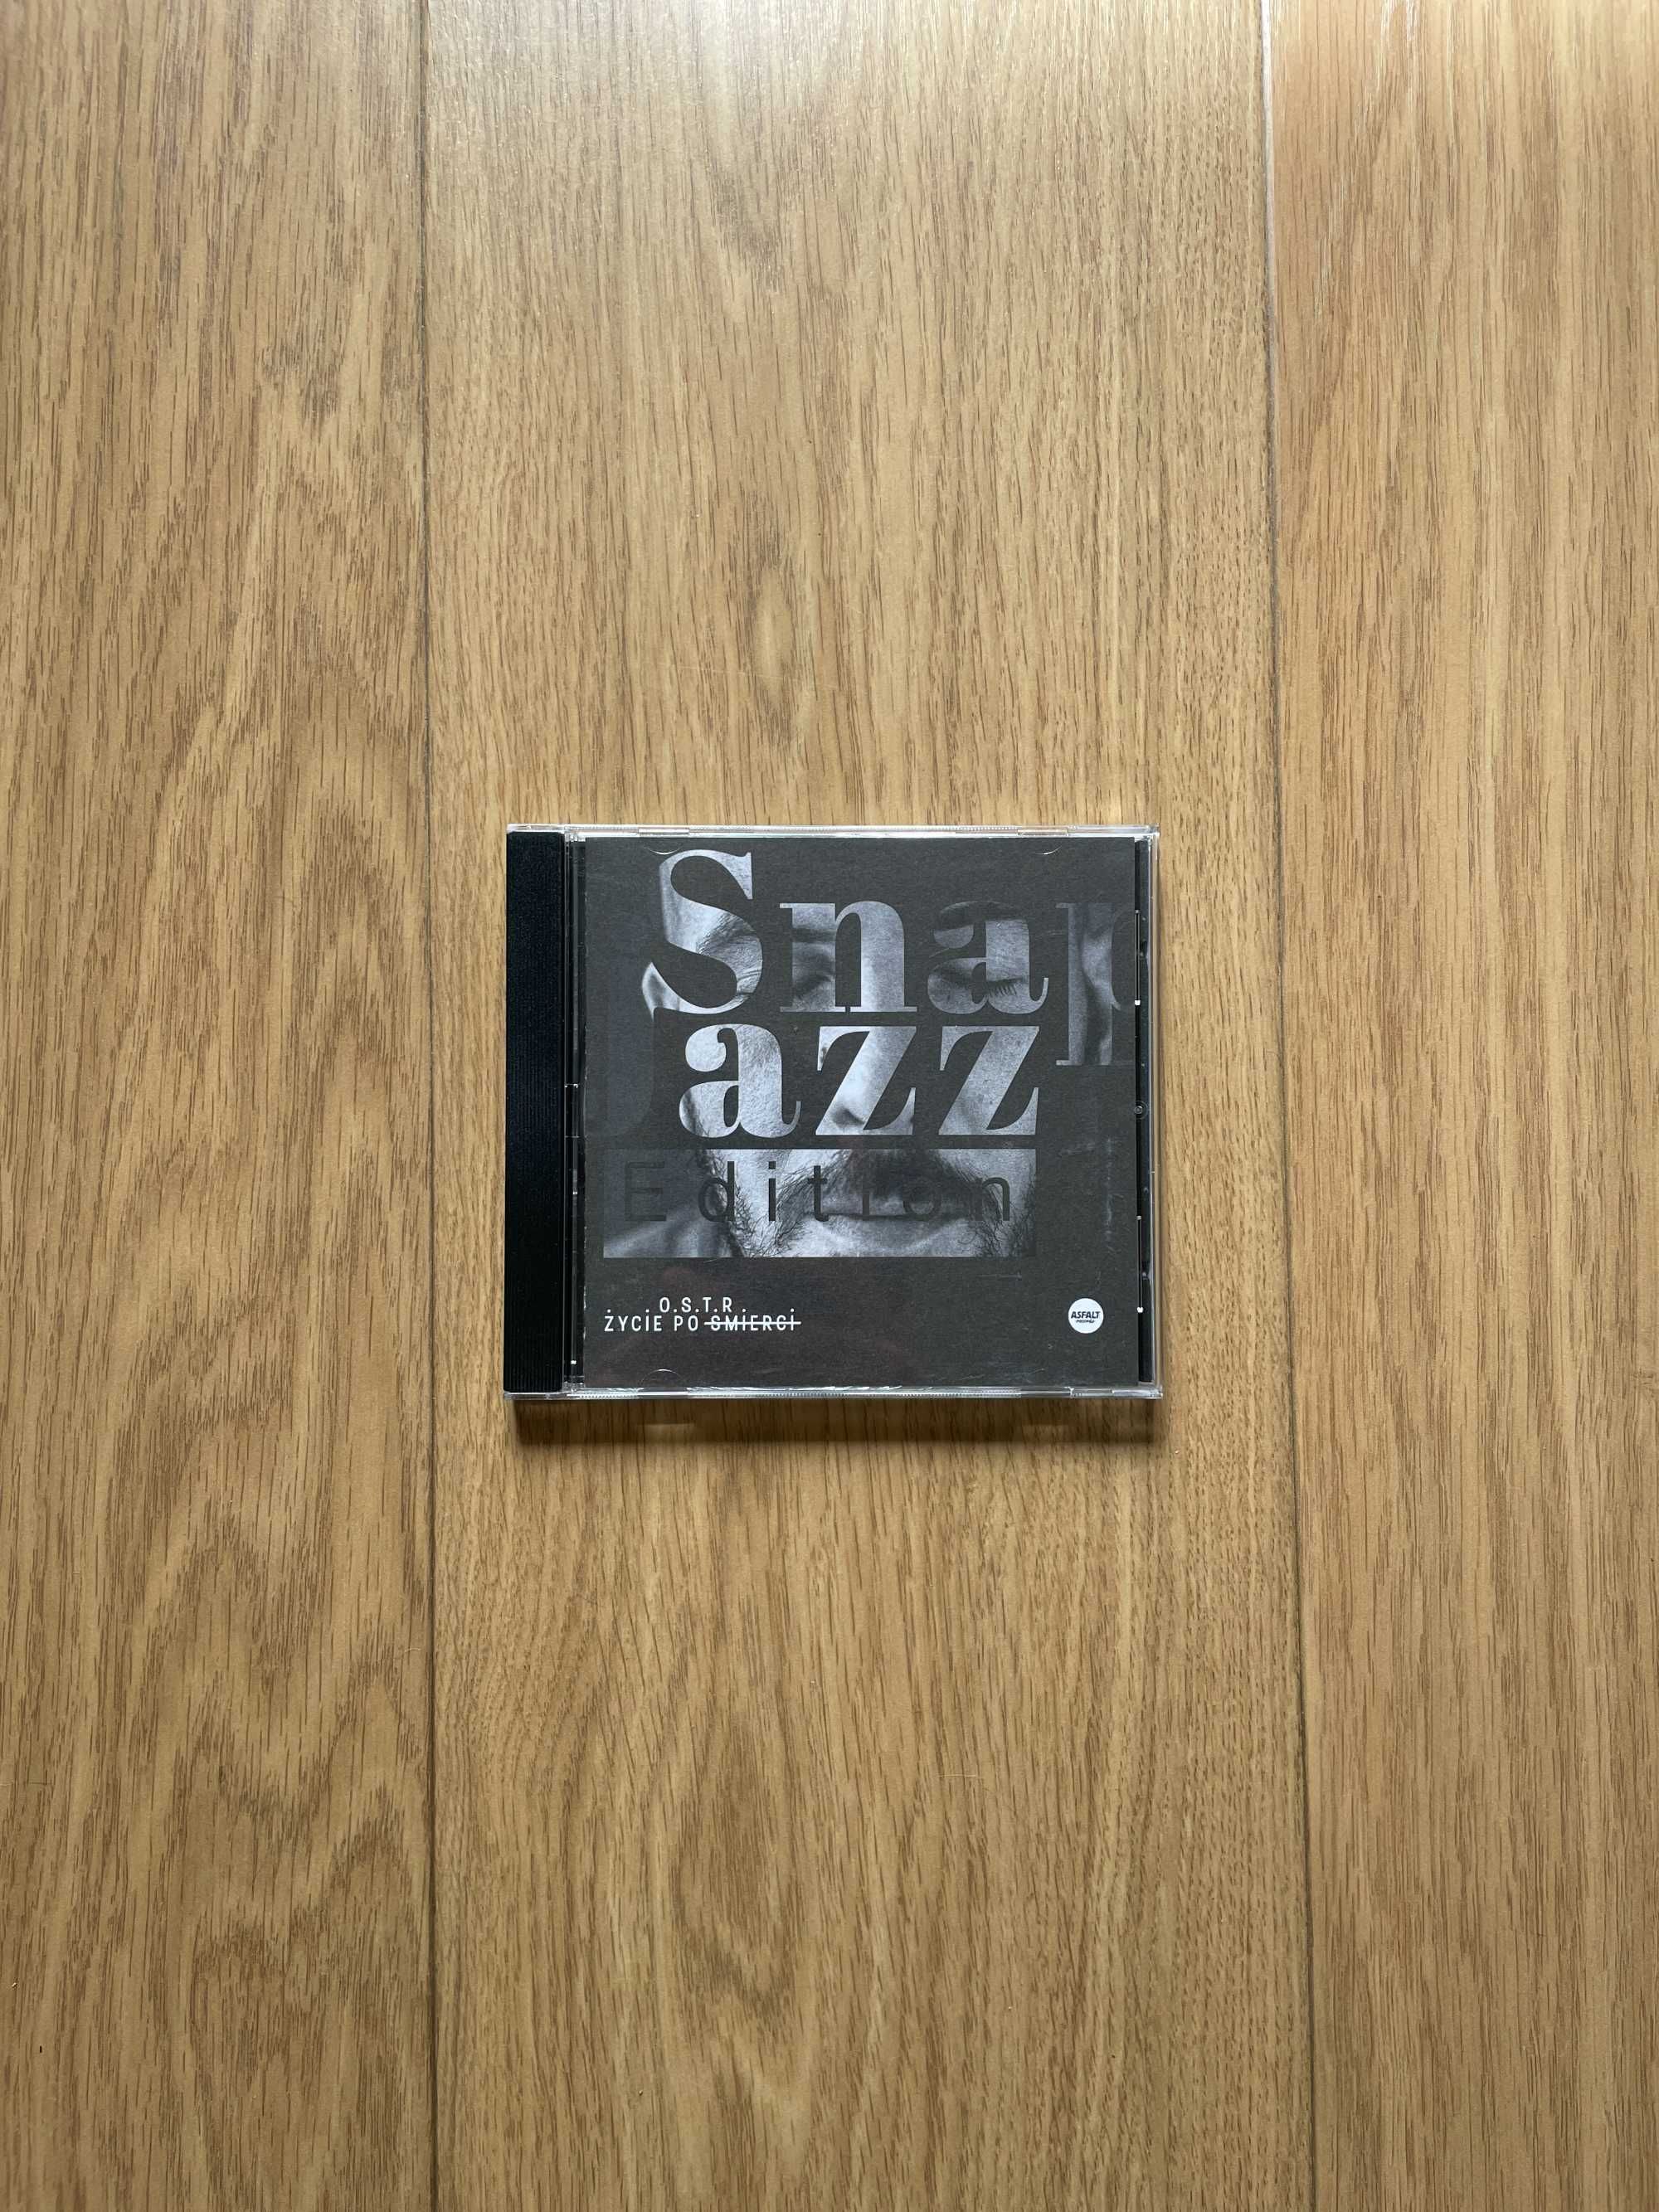 Płyta kompaktowa cd / O.S.T.R. - Życie po śmierci (snap jazz edition)